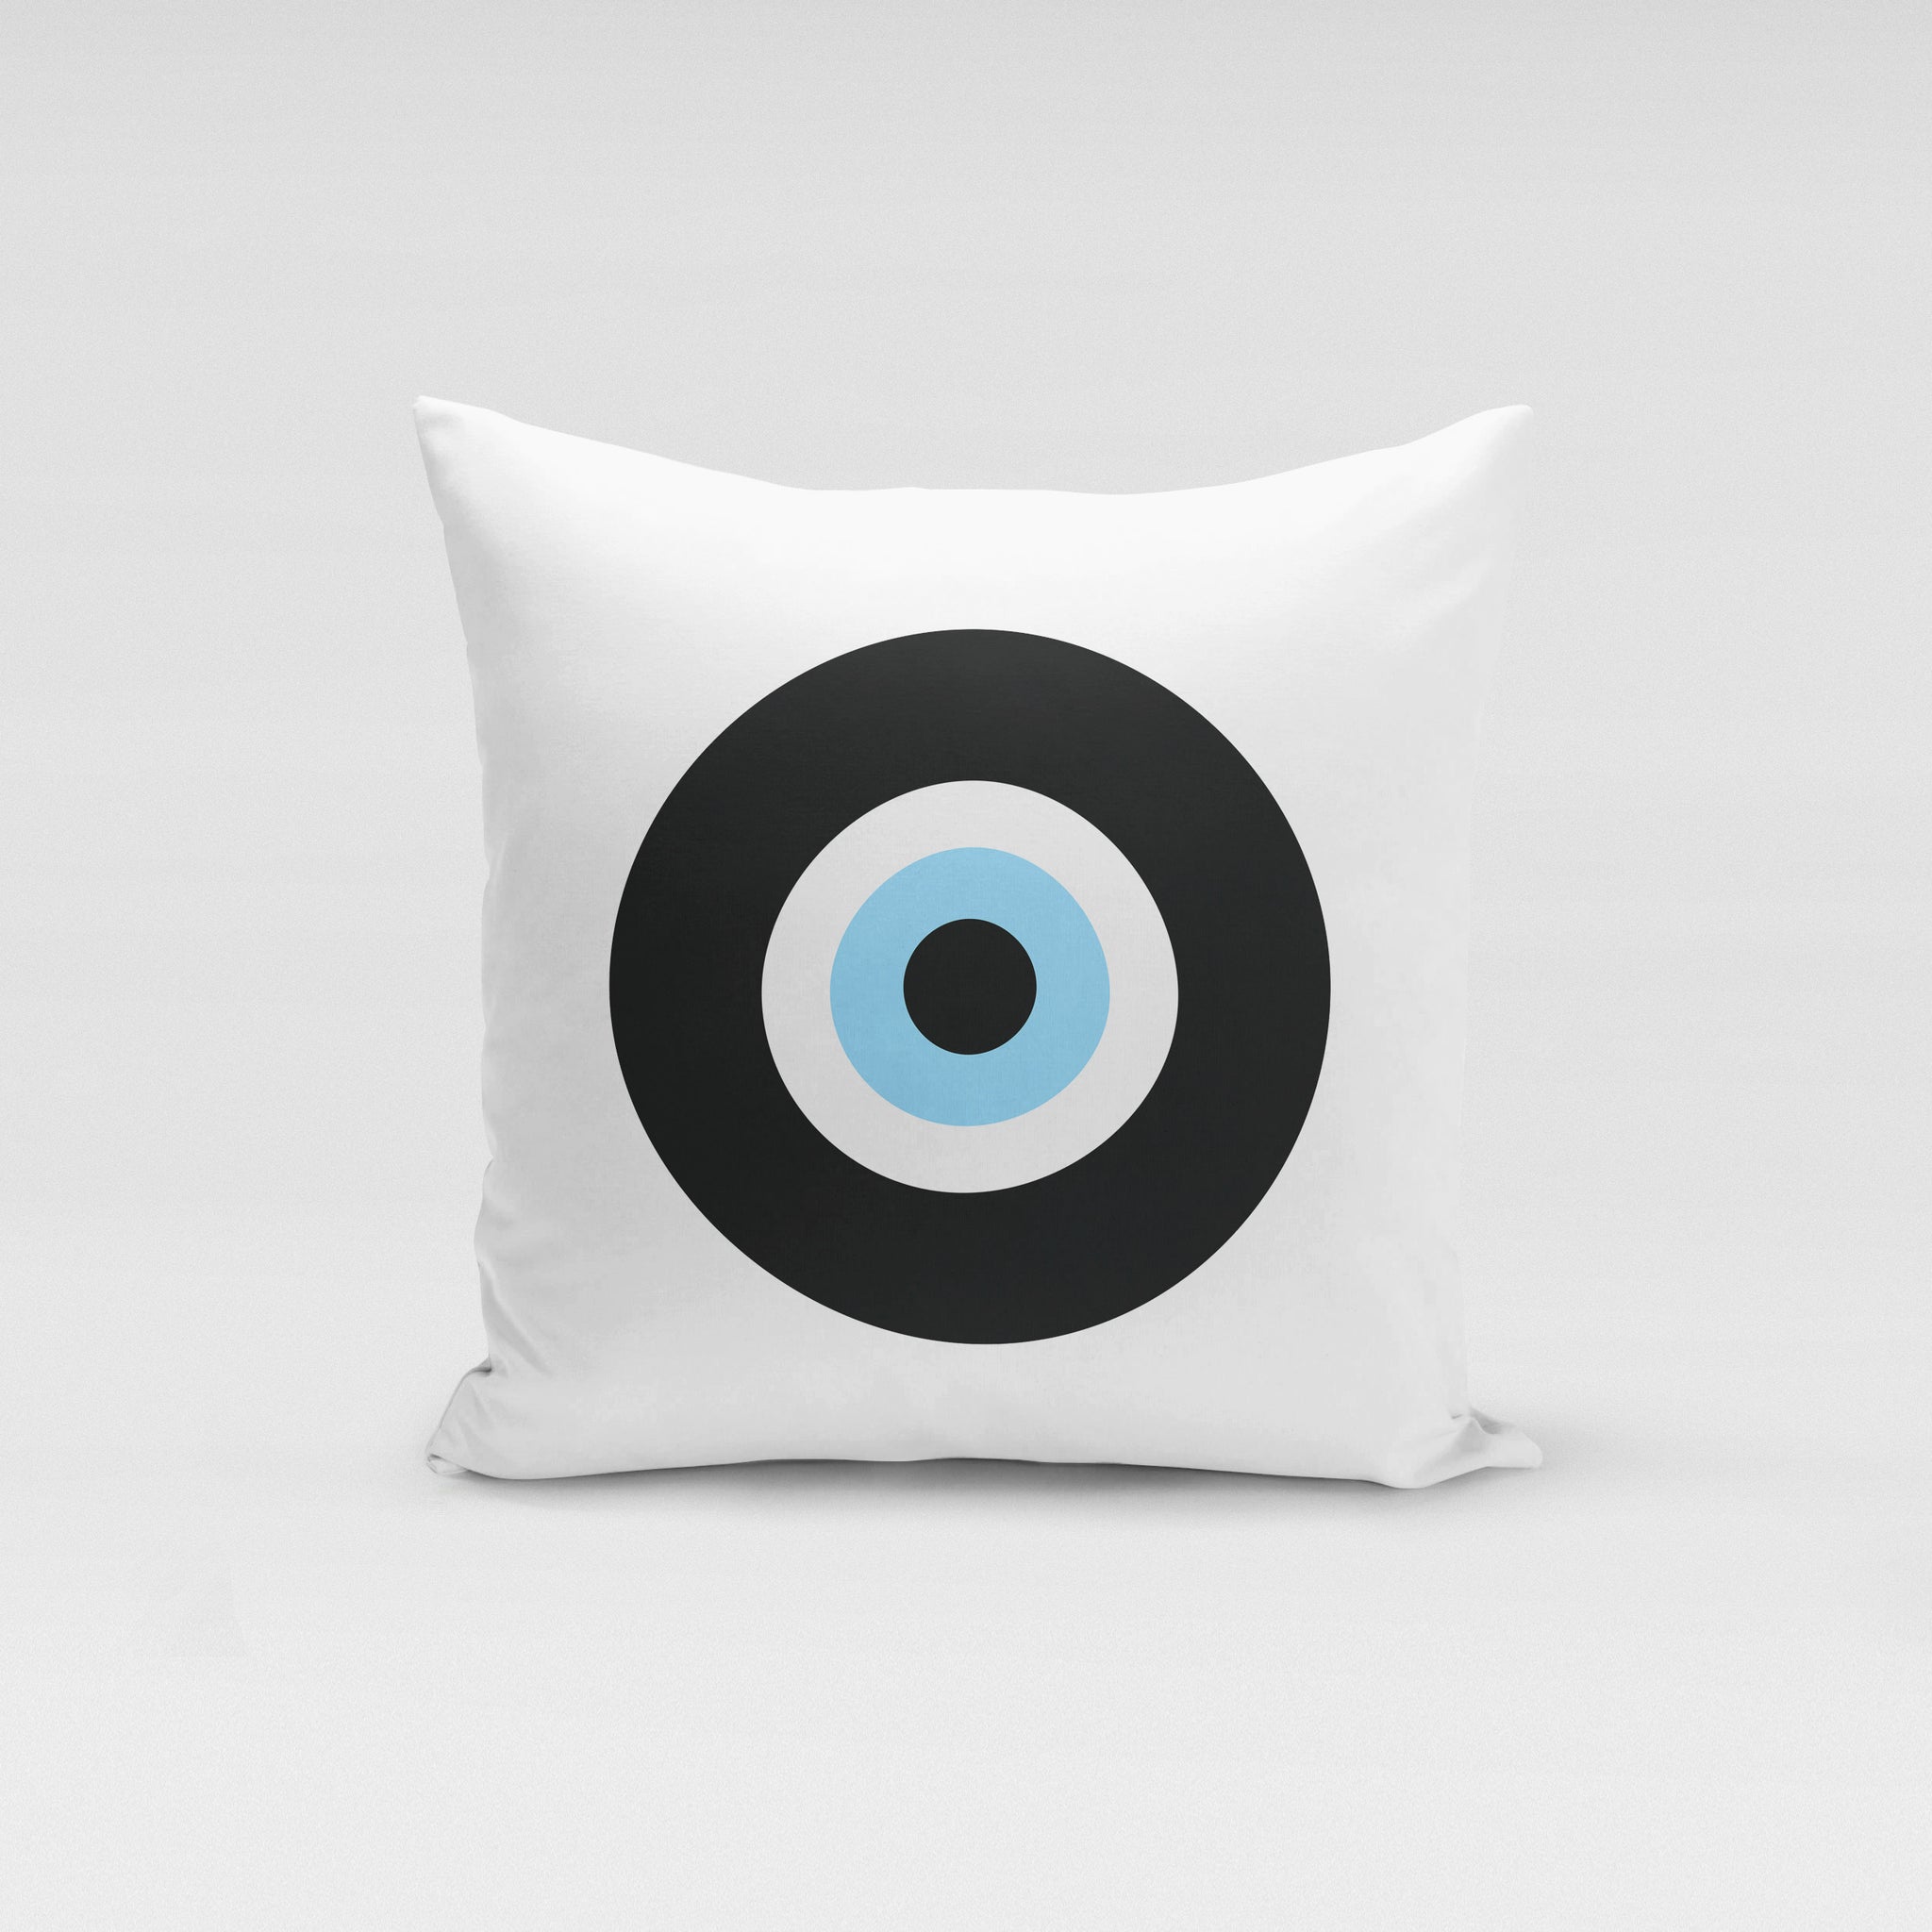 White Black Evil Eye Pillow